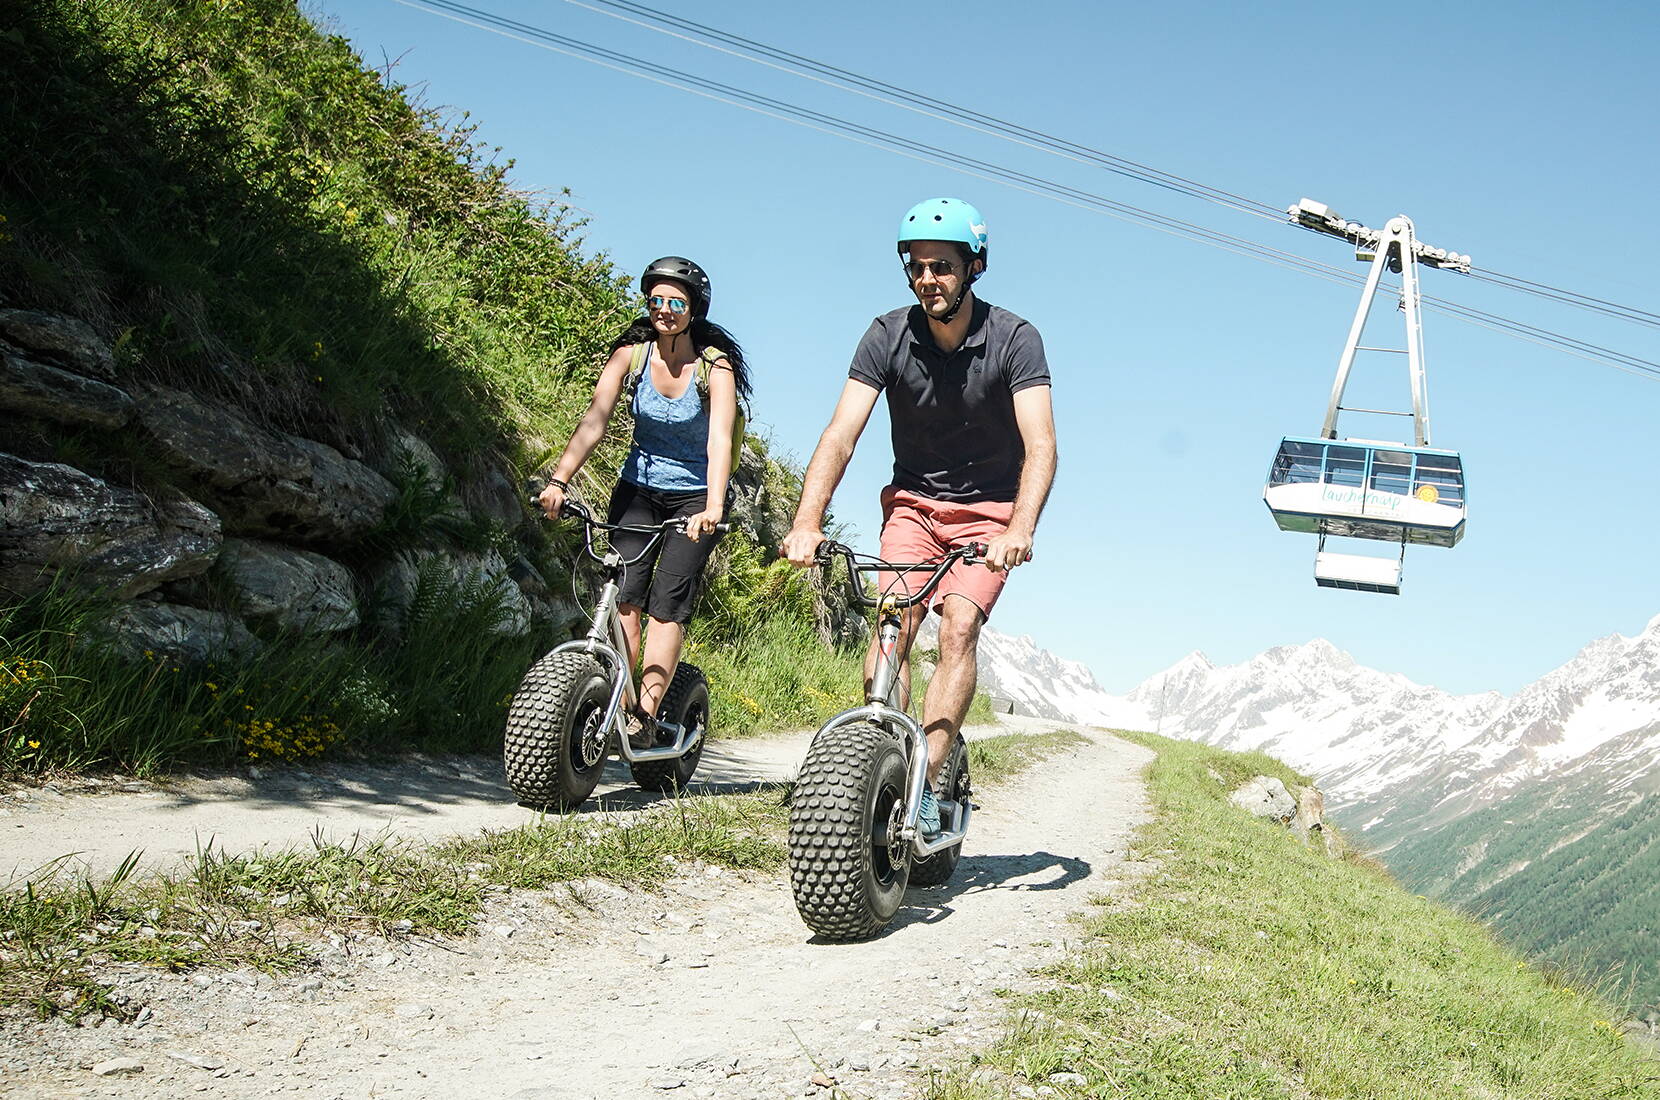 Prendete il vostro scooter gigante alla stazione a monte della funivia Wiler-Lauchernalp e partite! Come coronamento della vostra escursione o semplicemente per divertimento, sfrecciate lungo la strada ben tenuta fino a Wiler.